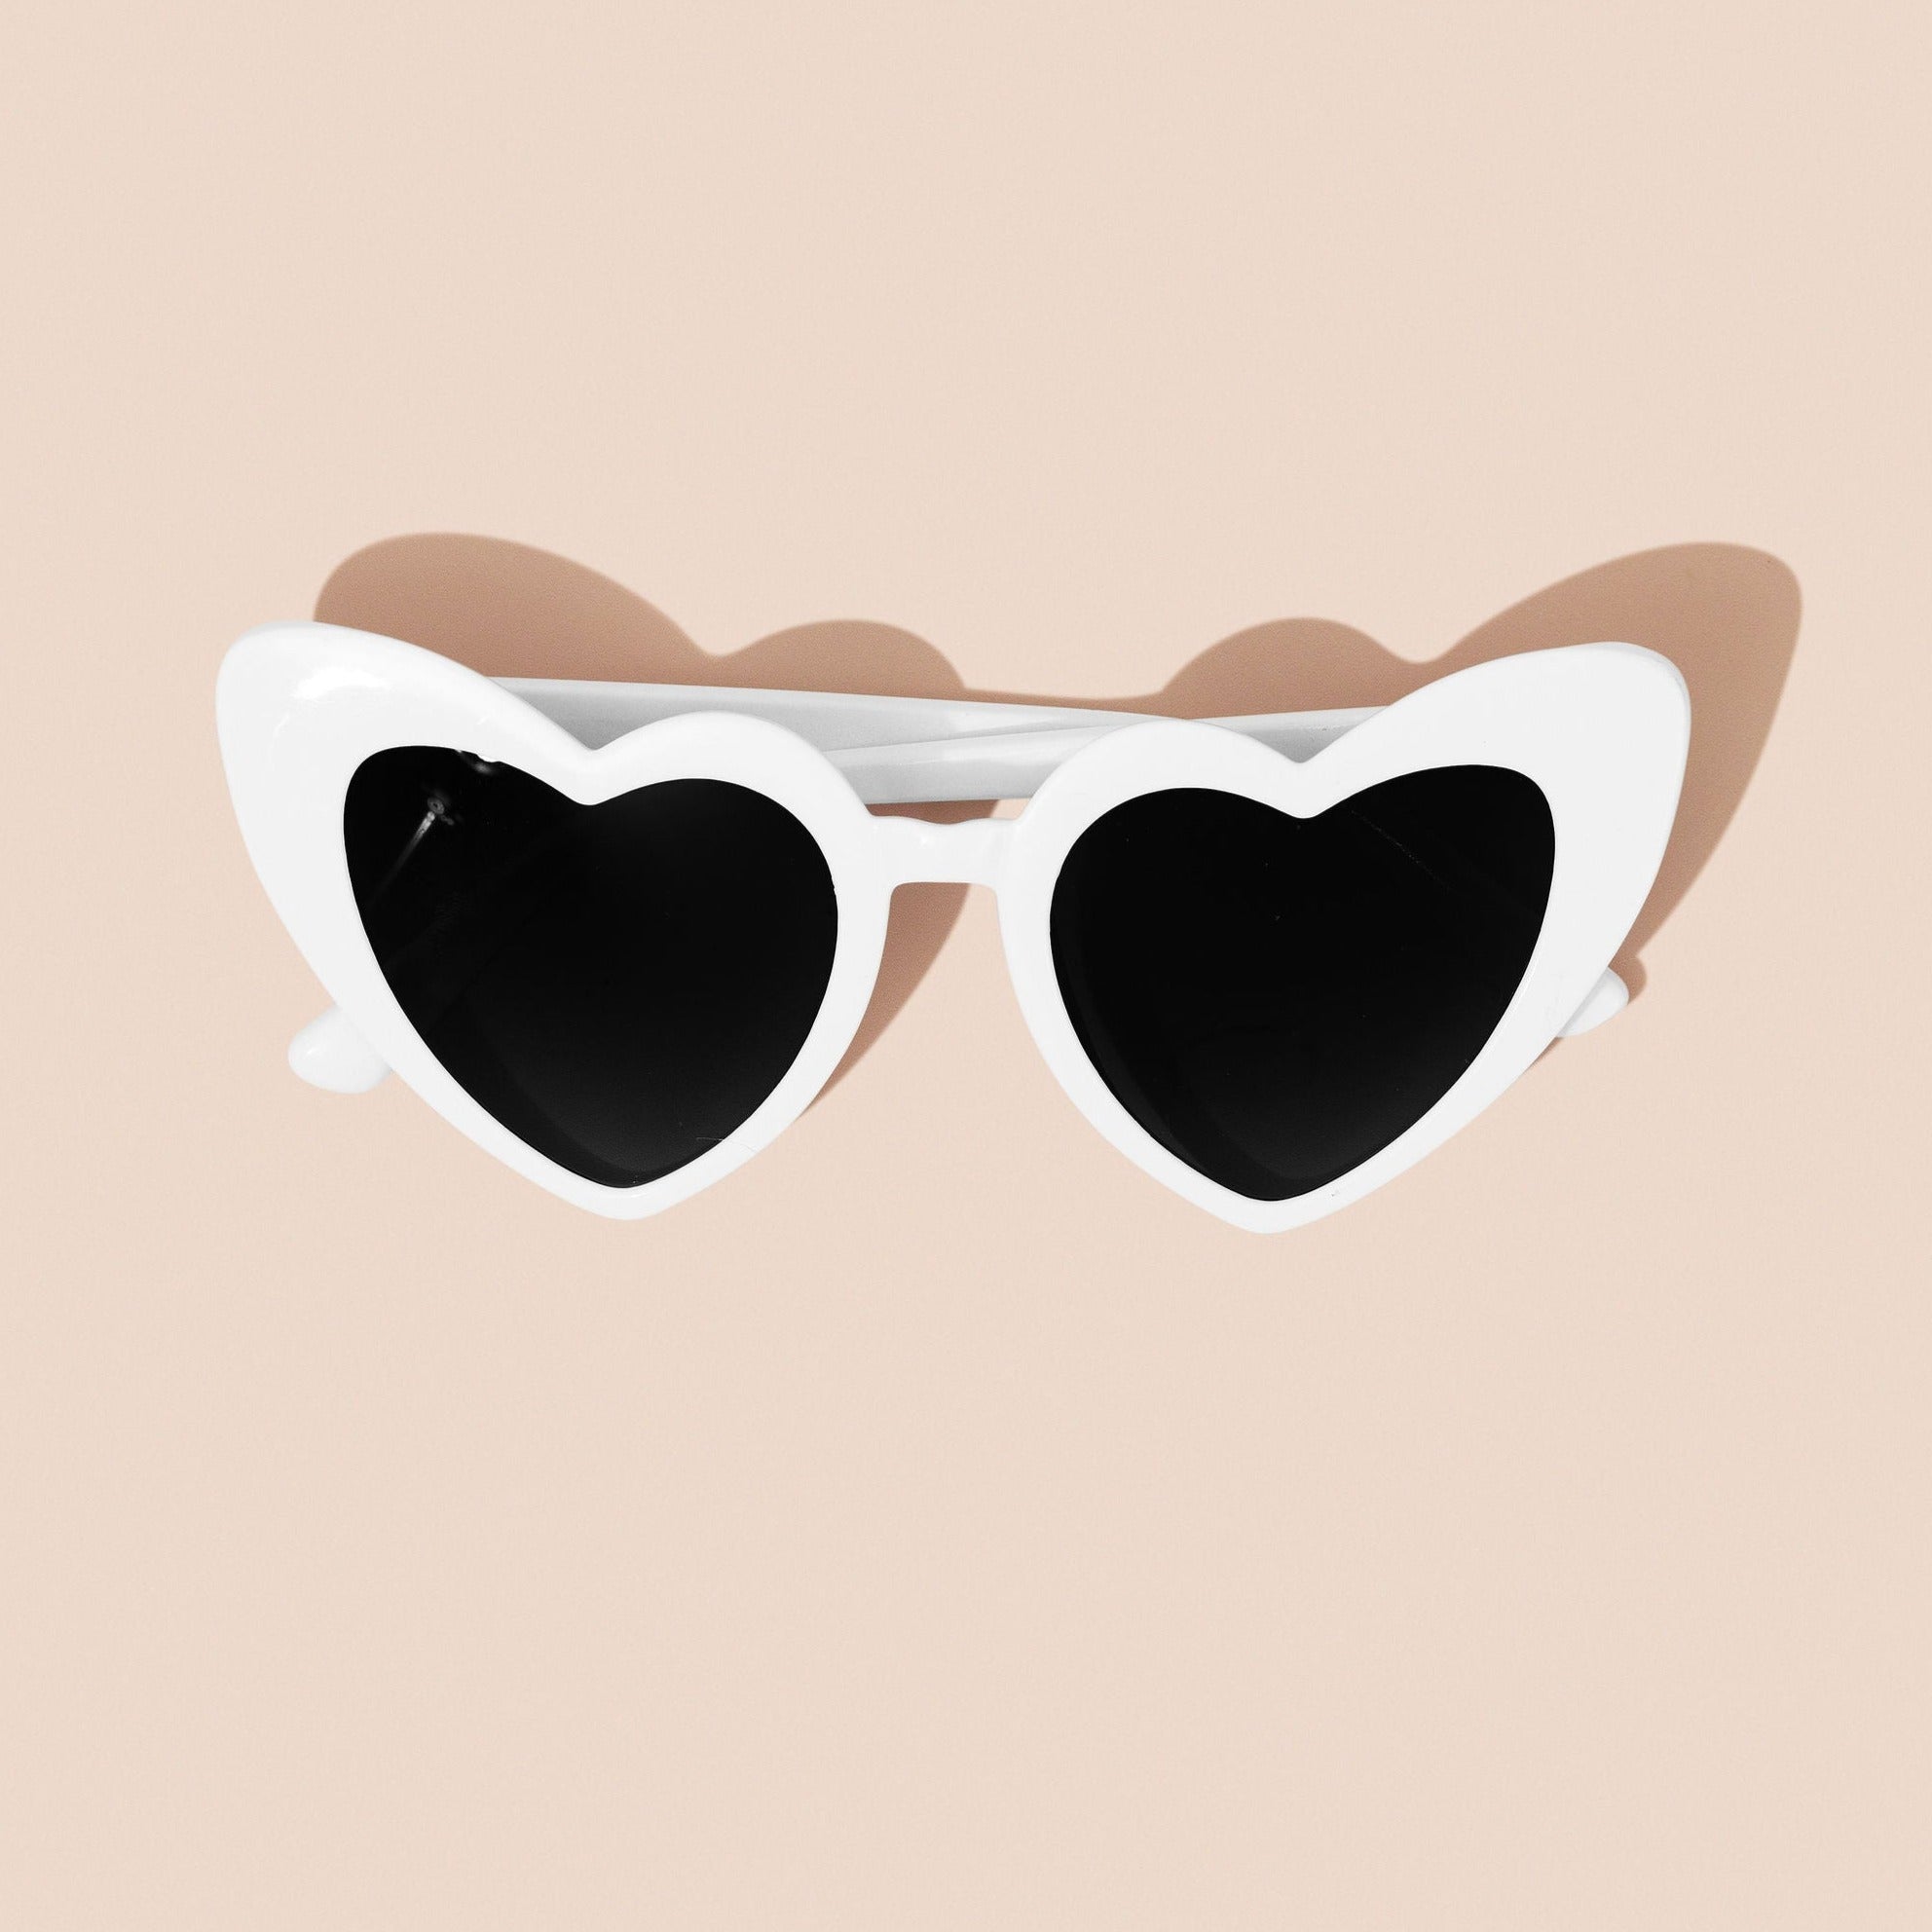 White heart sunglasses